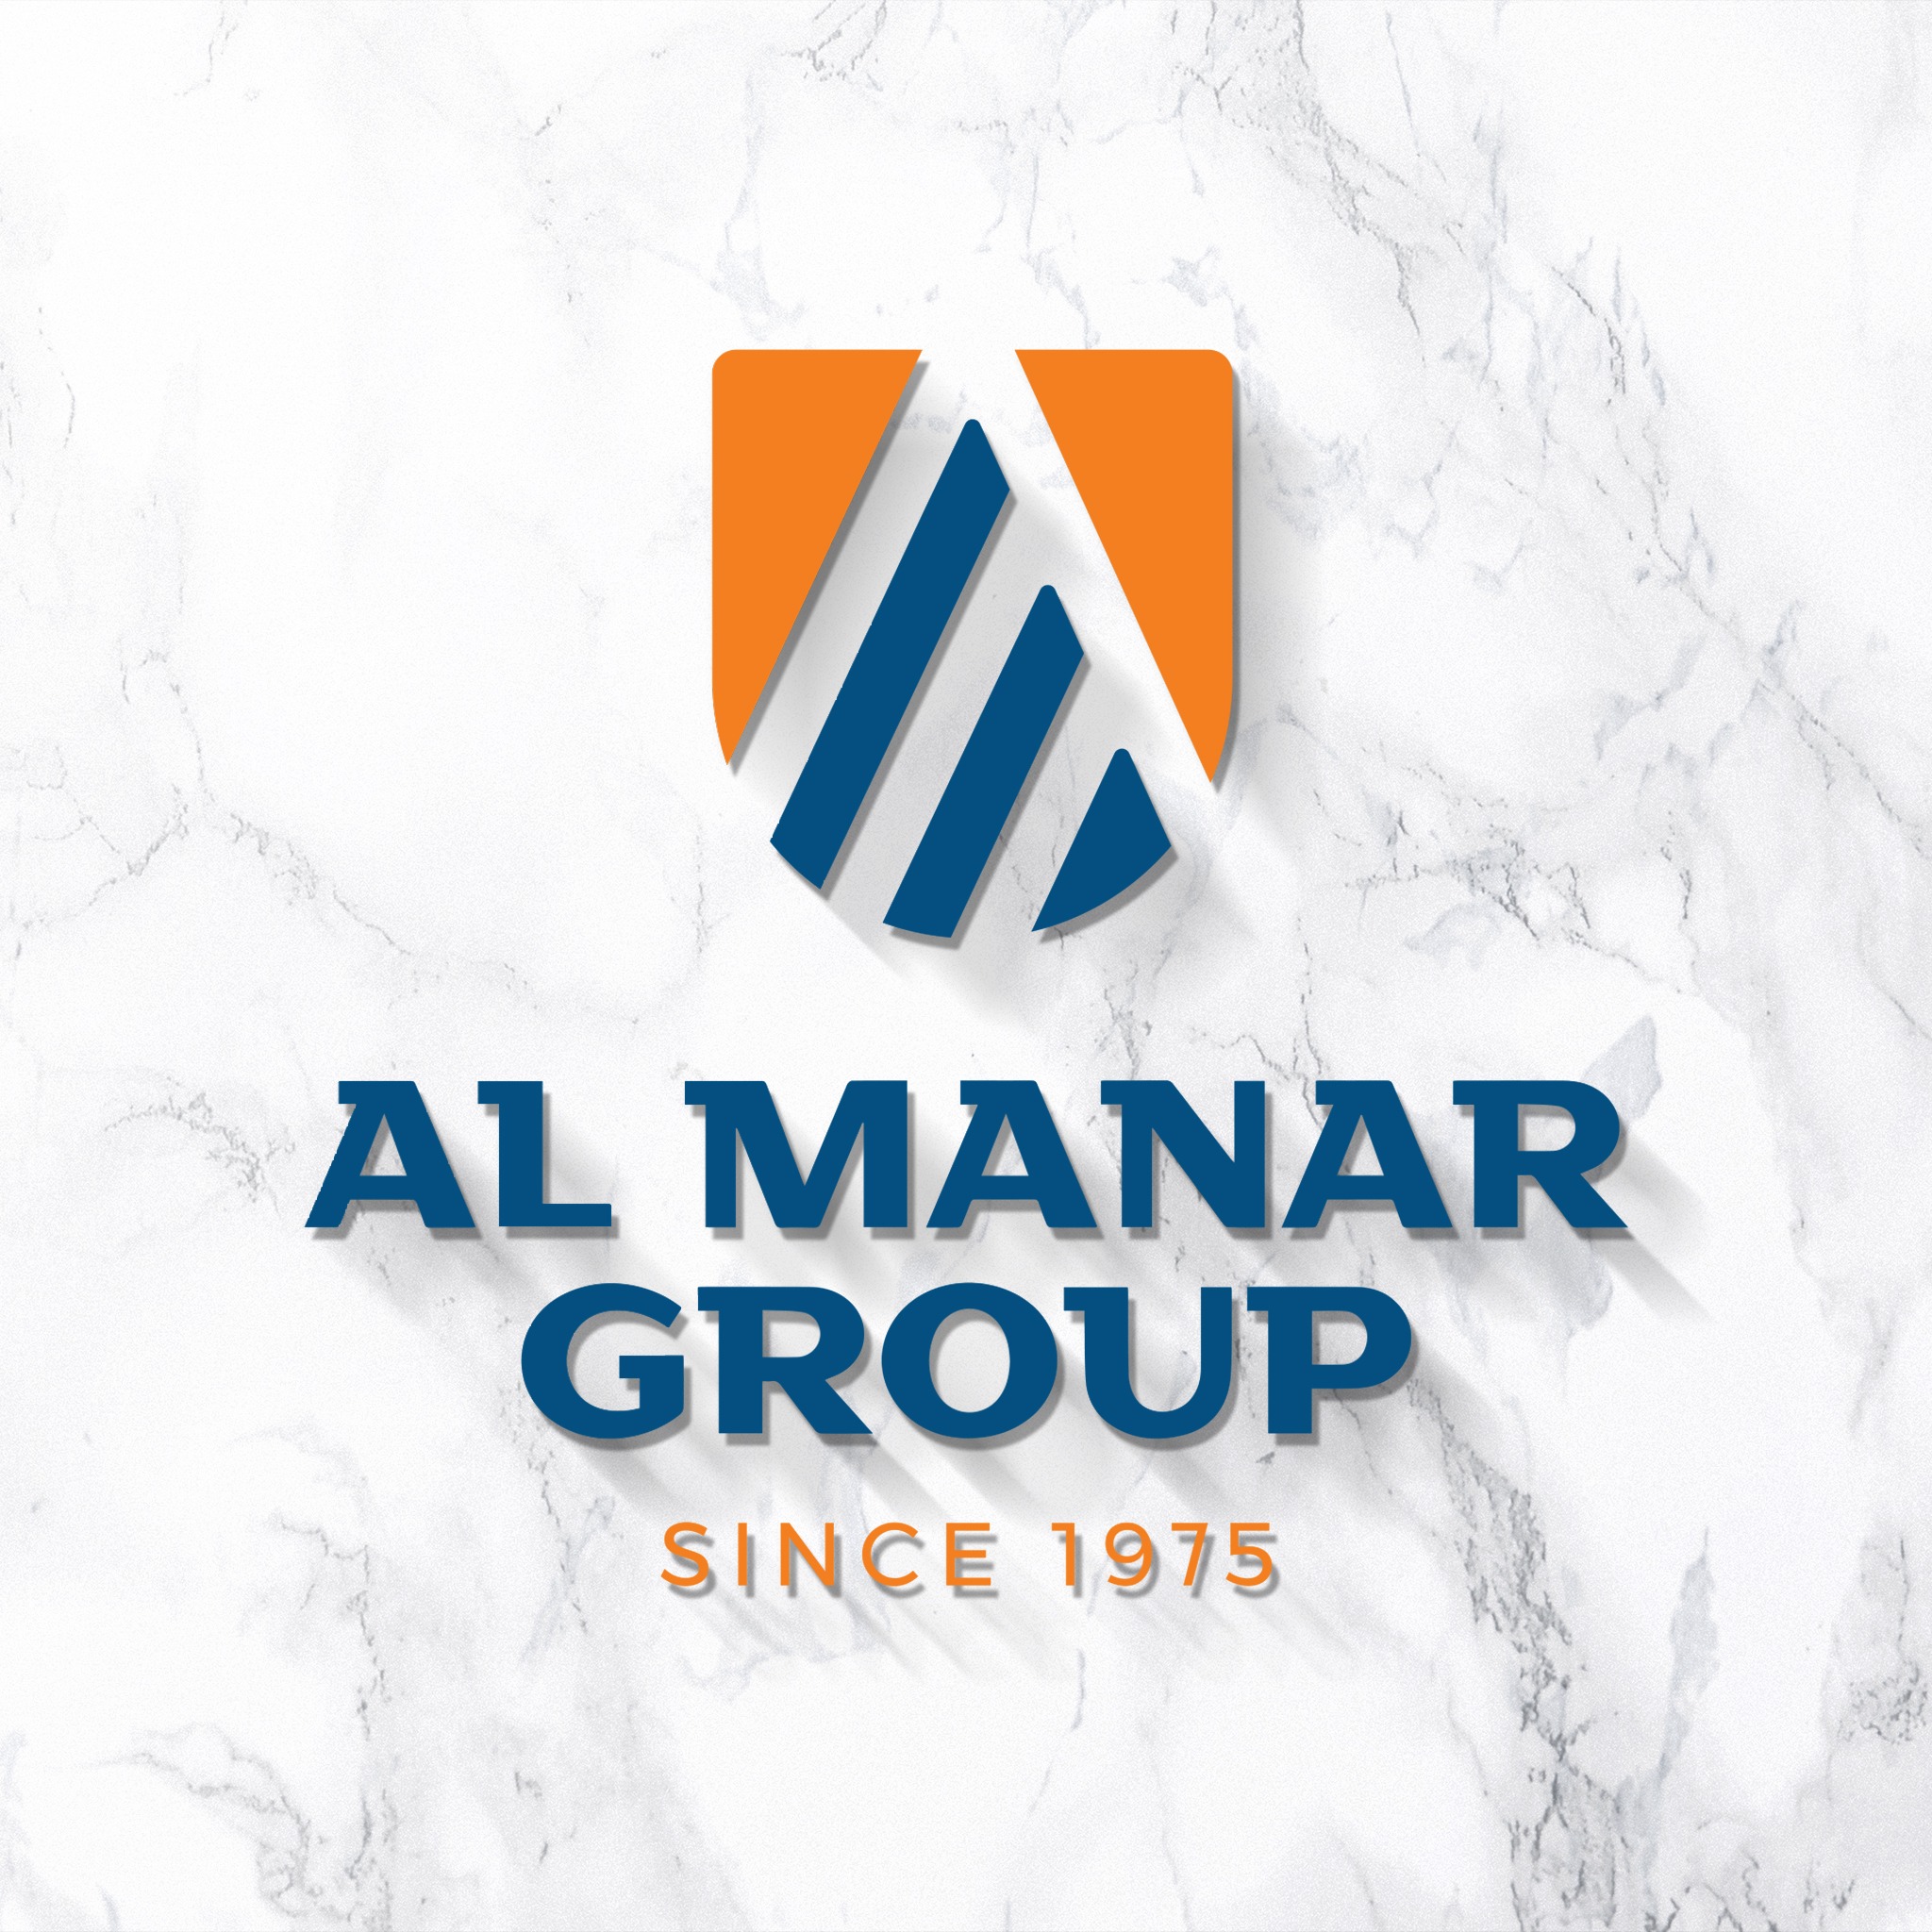 Almanar Group